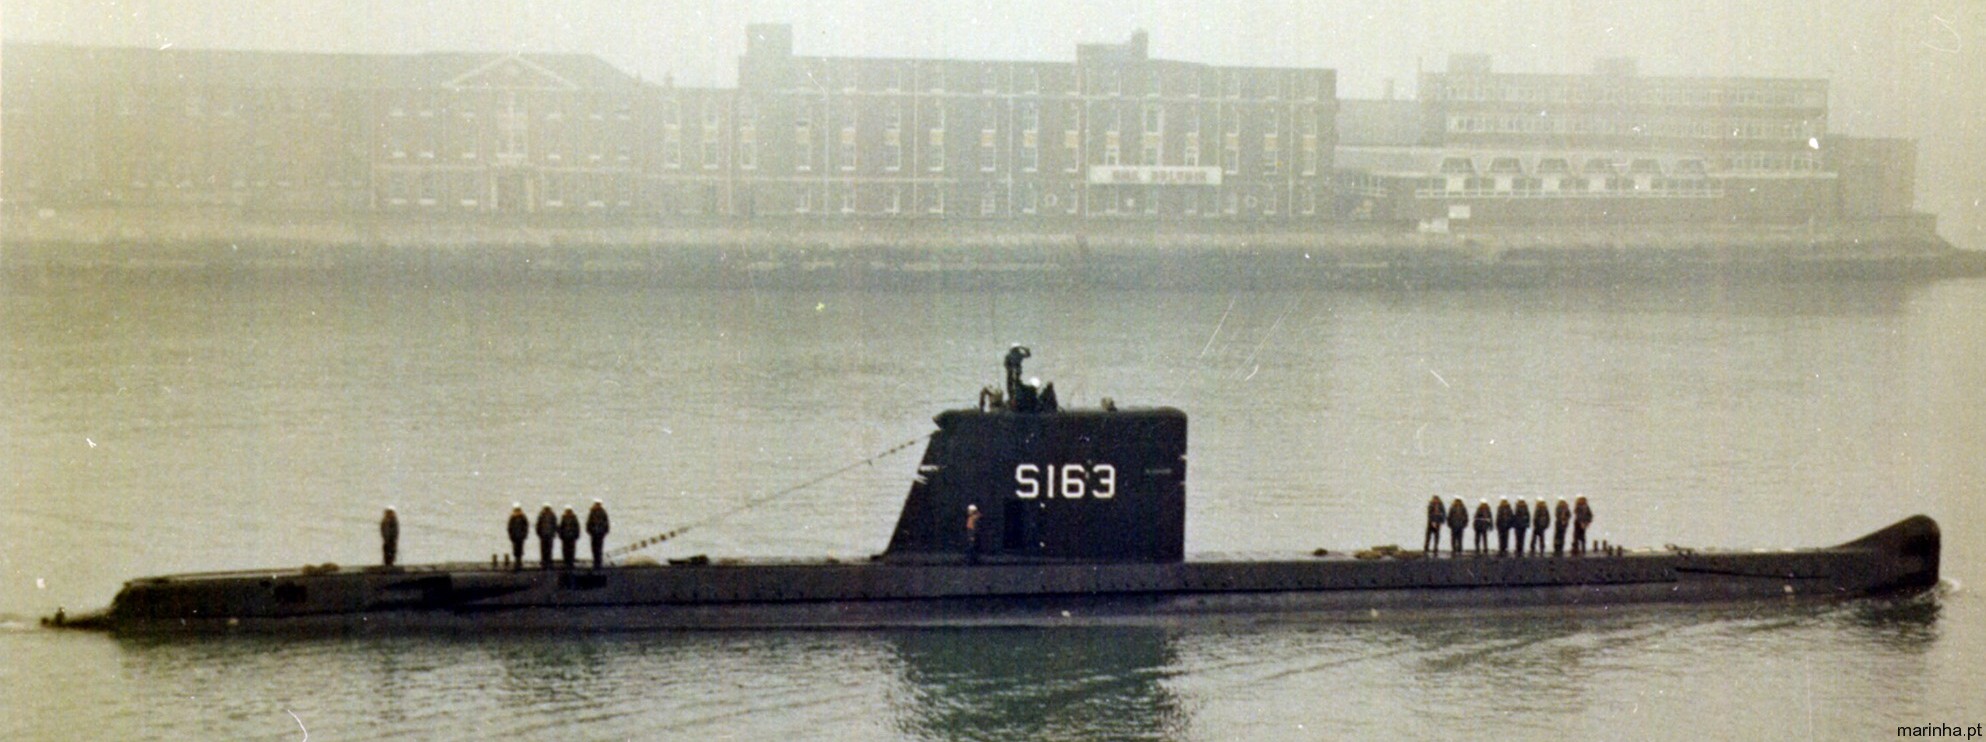 s-163 nrp albacora class daphne attack submarine ssk portuguese navy marinha 02